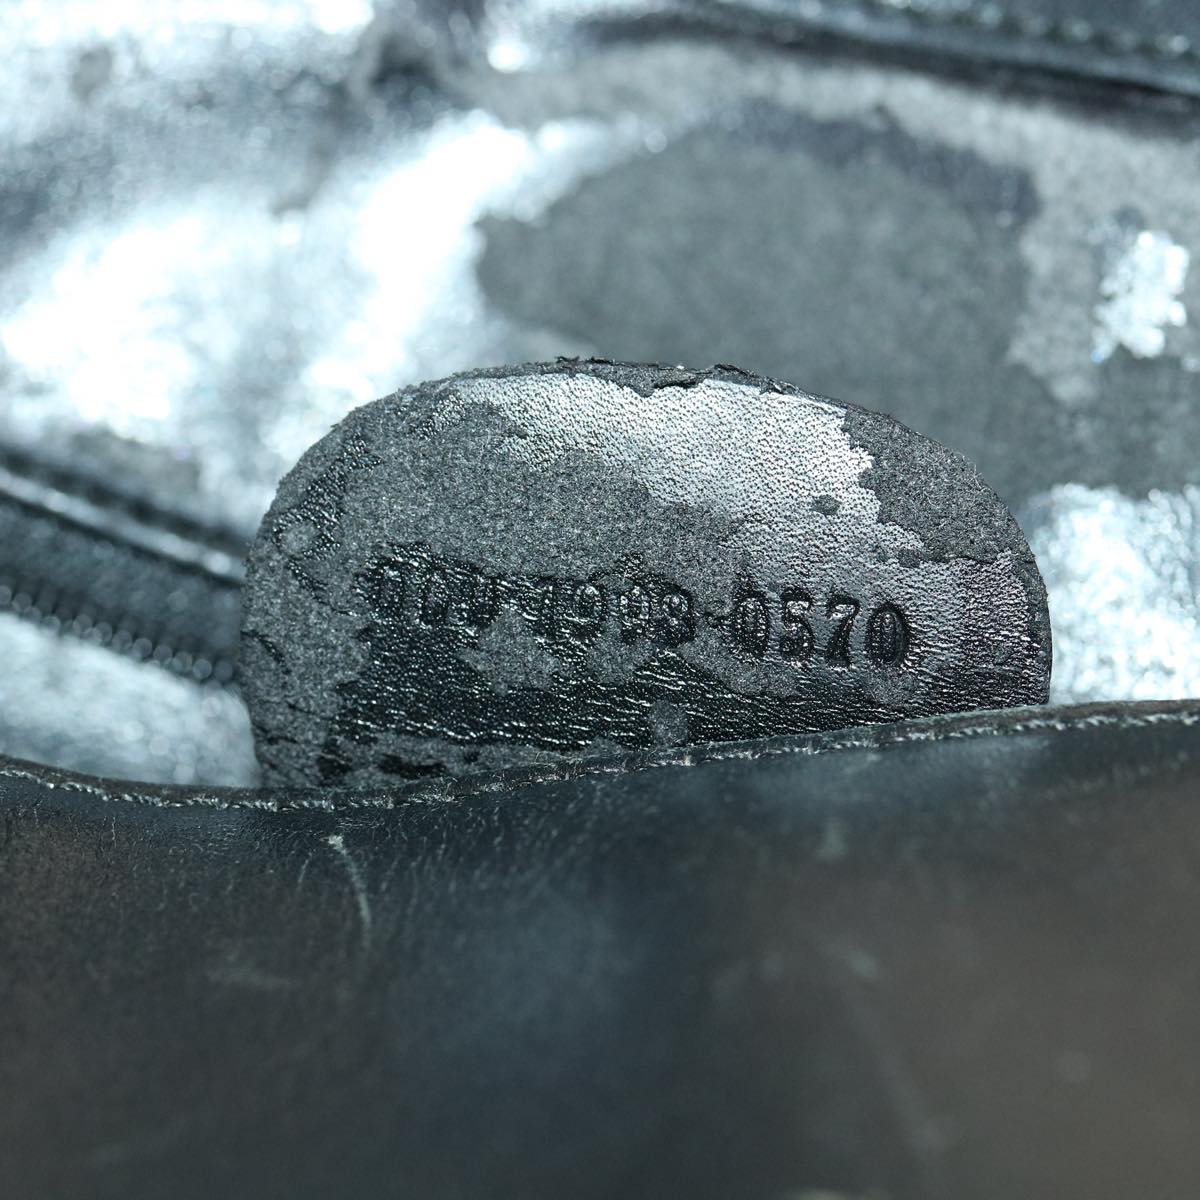 GUCCI Hand Bag Leather 3Set Black Auth fm1716